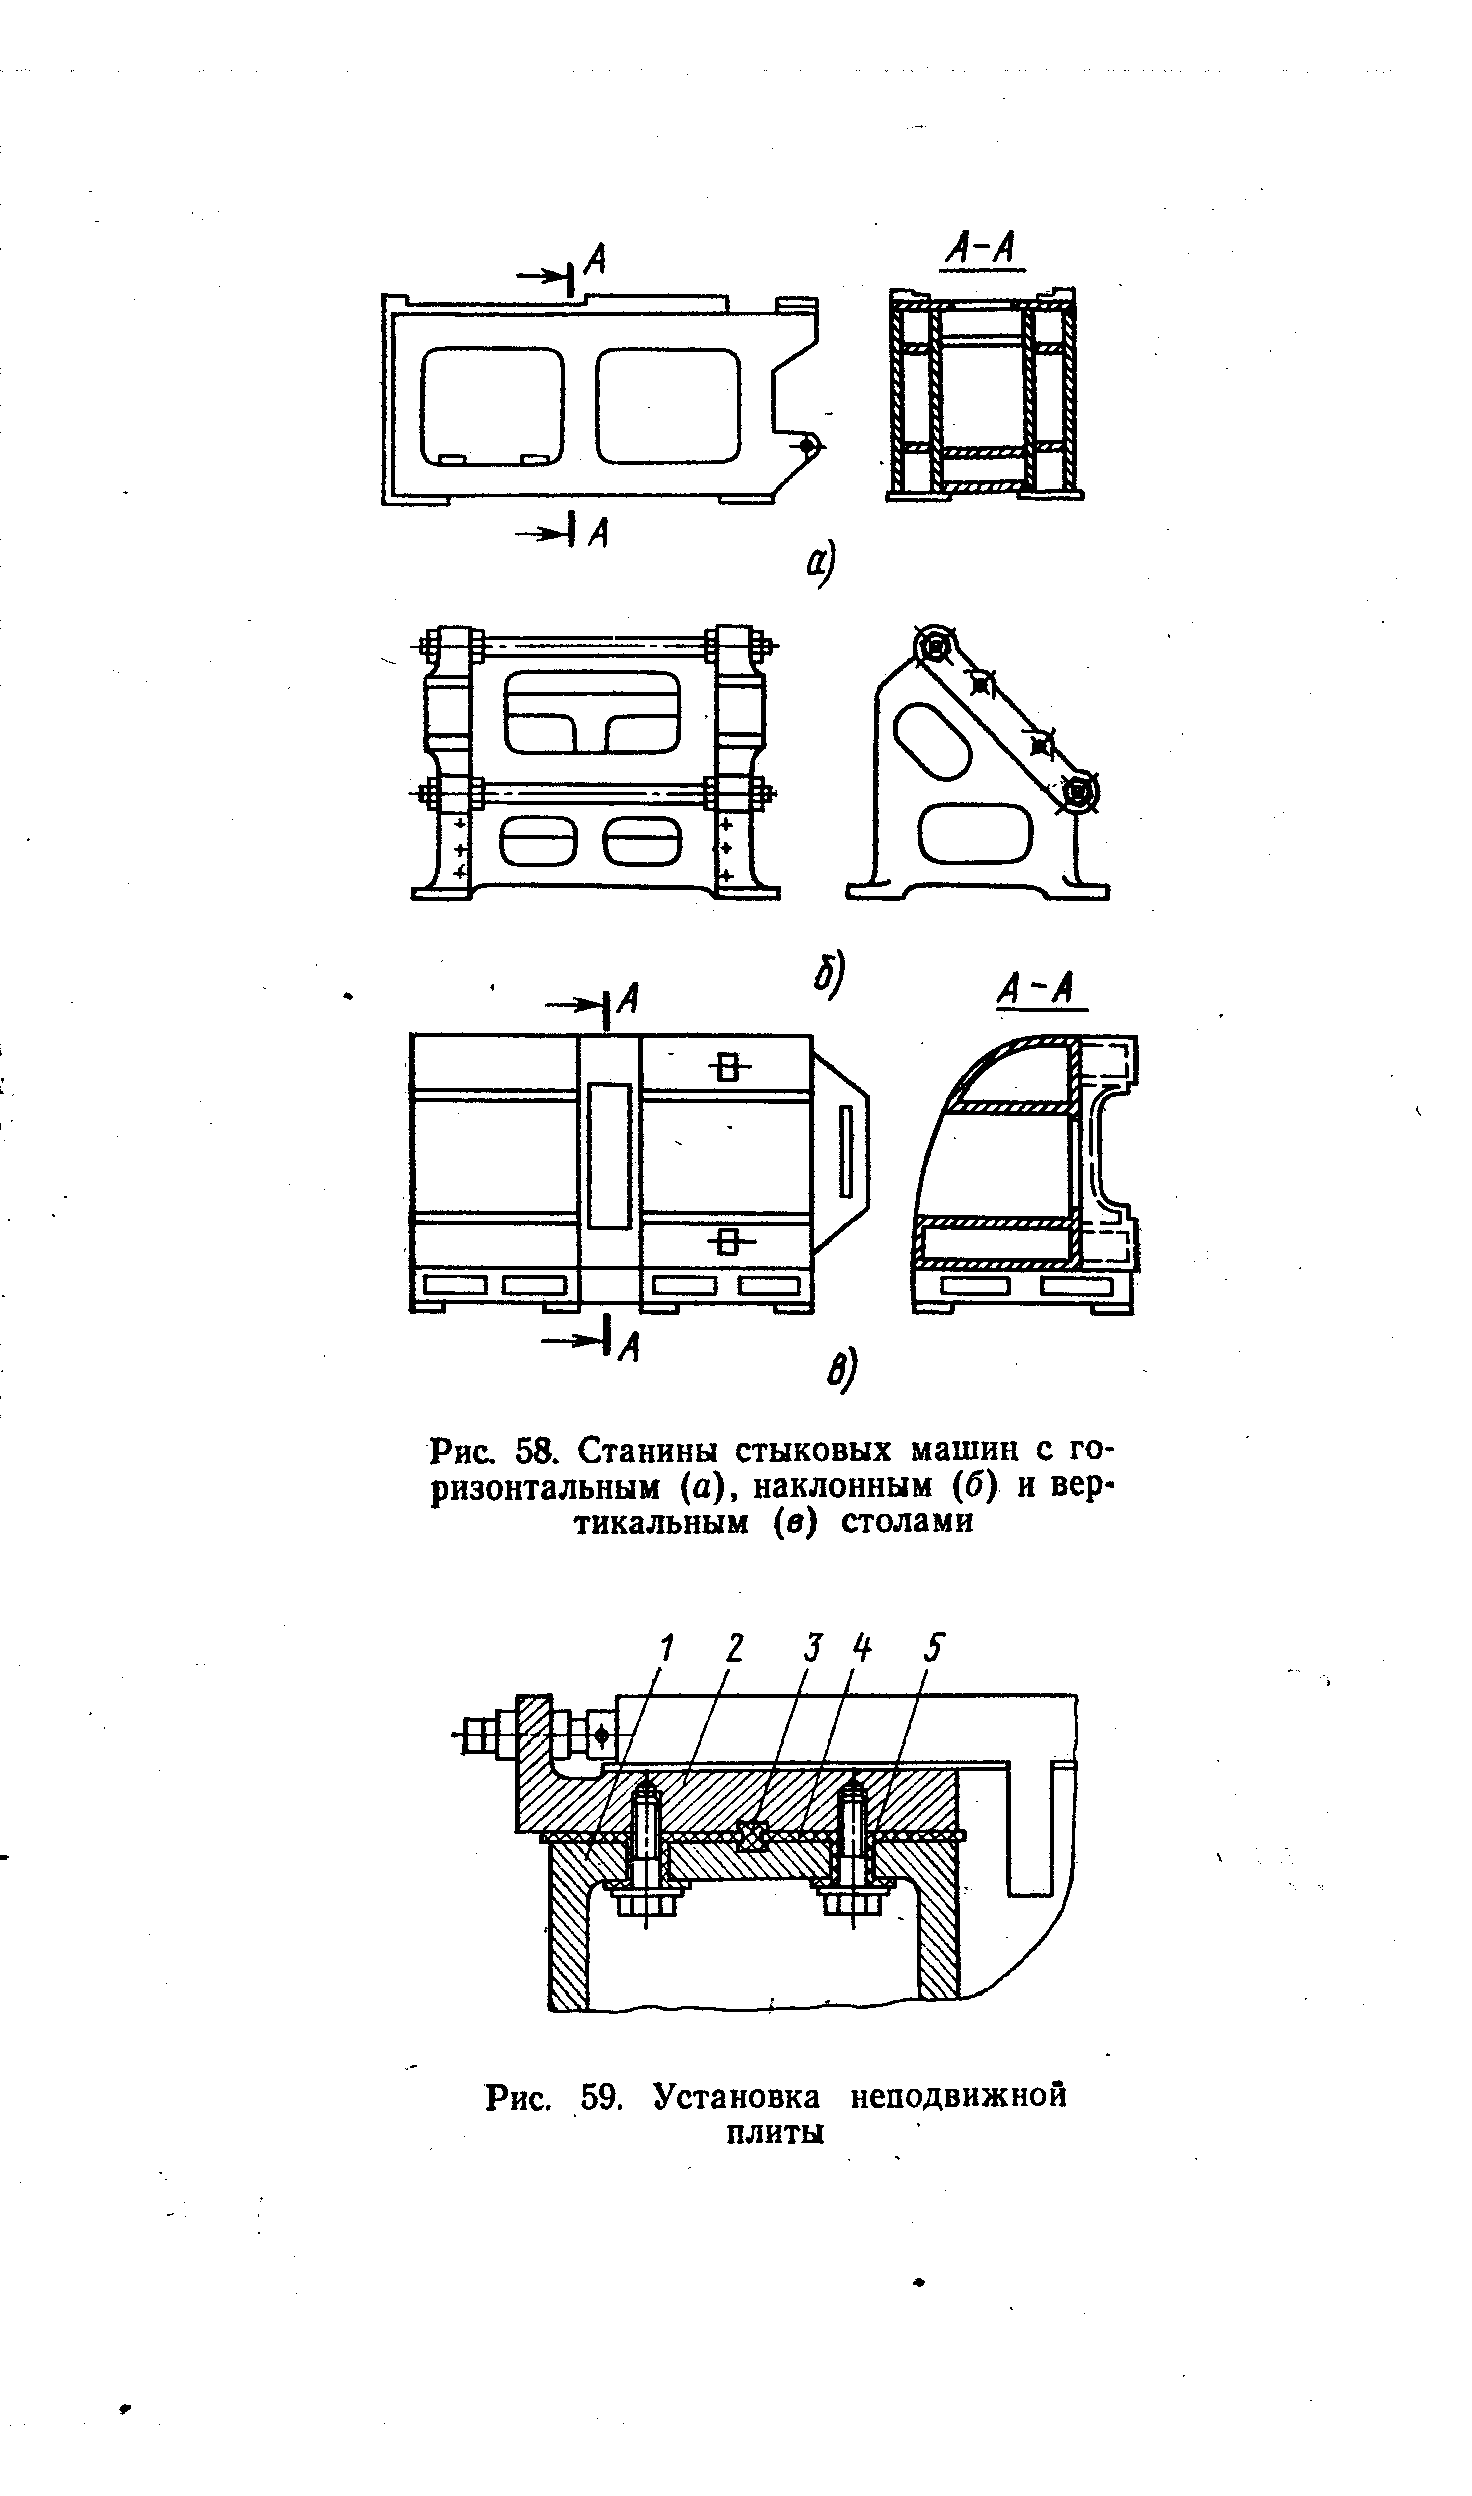 Рис. 58. Станины стыковых машин с горизонтальным (а), наклонным (б) и вертикальным (в) столами
